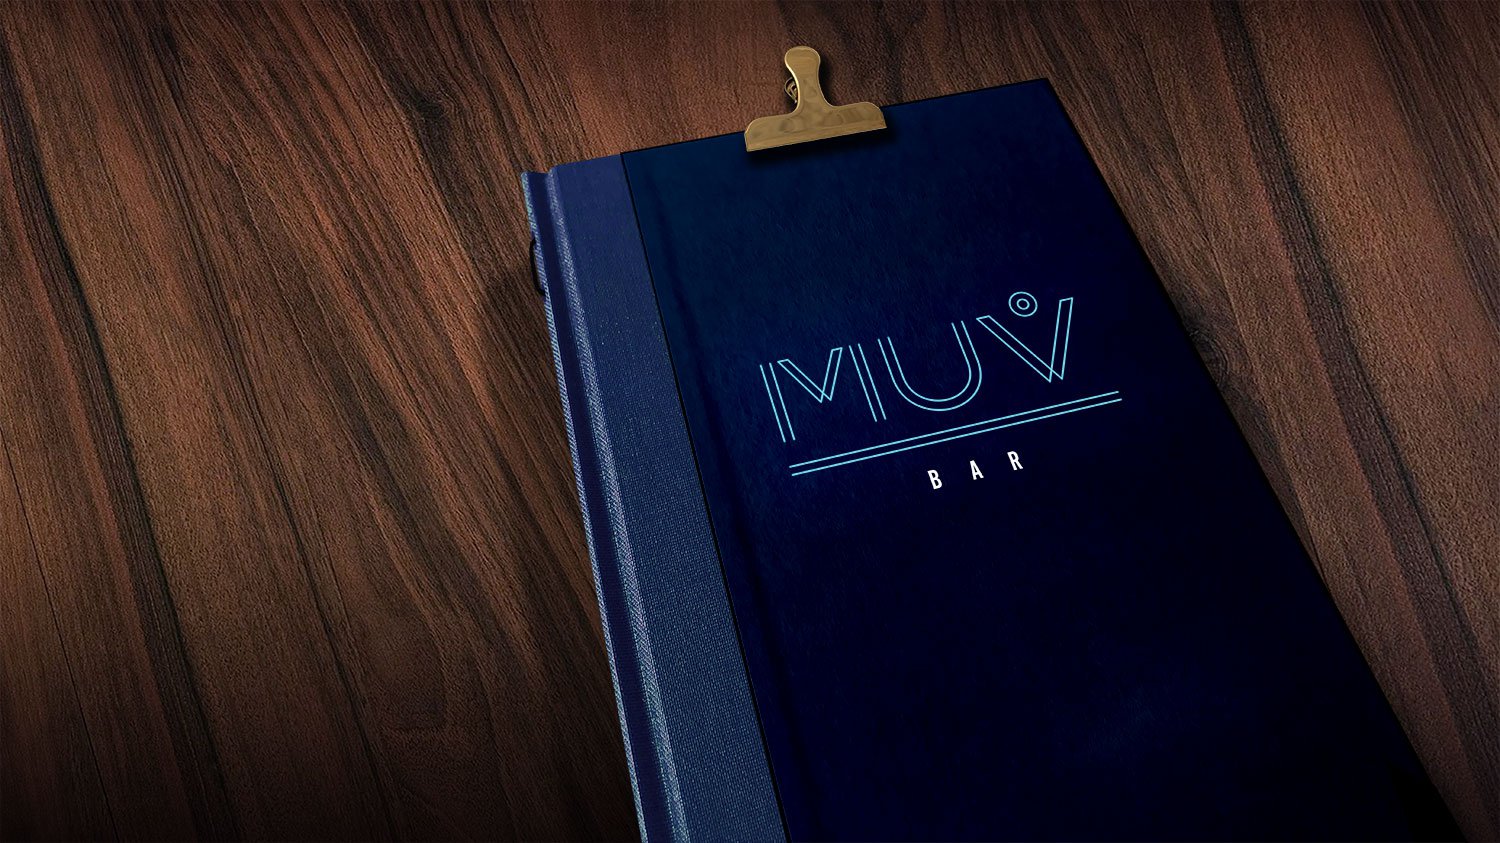 MUVbar menu design